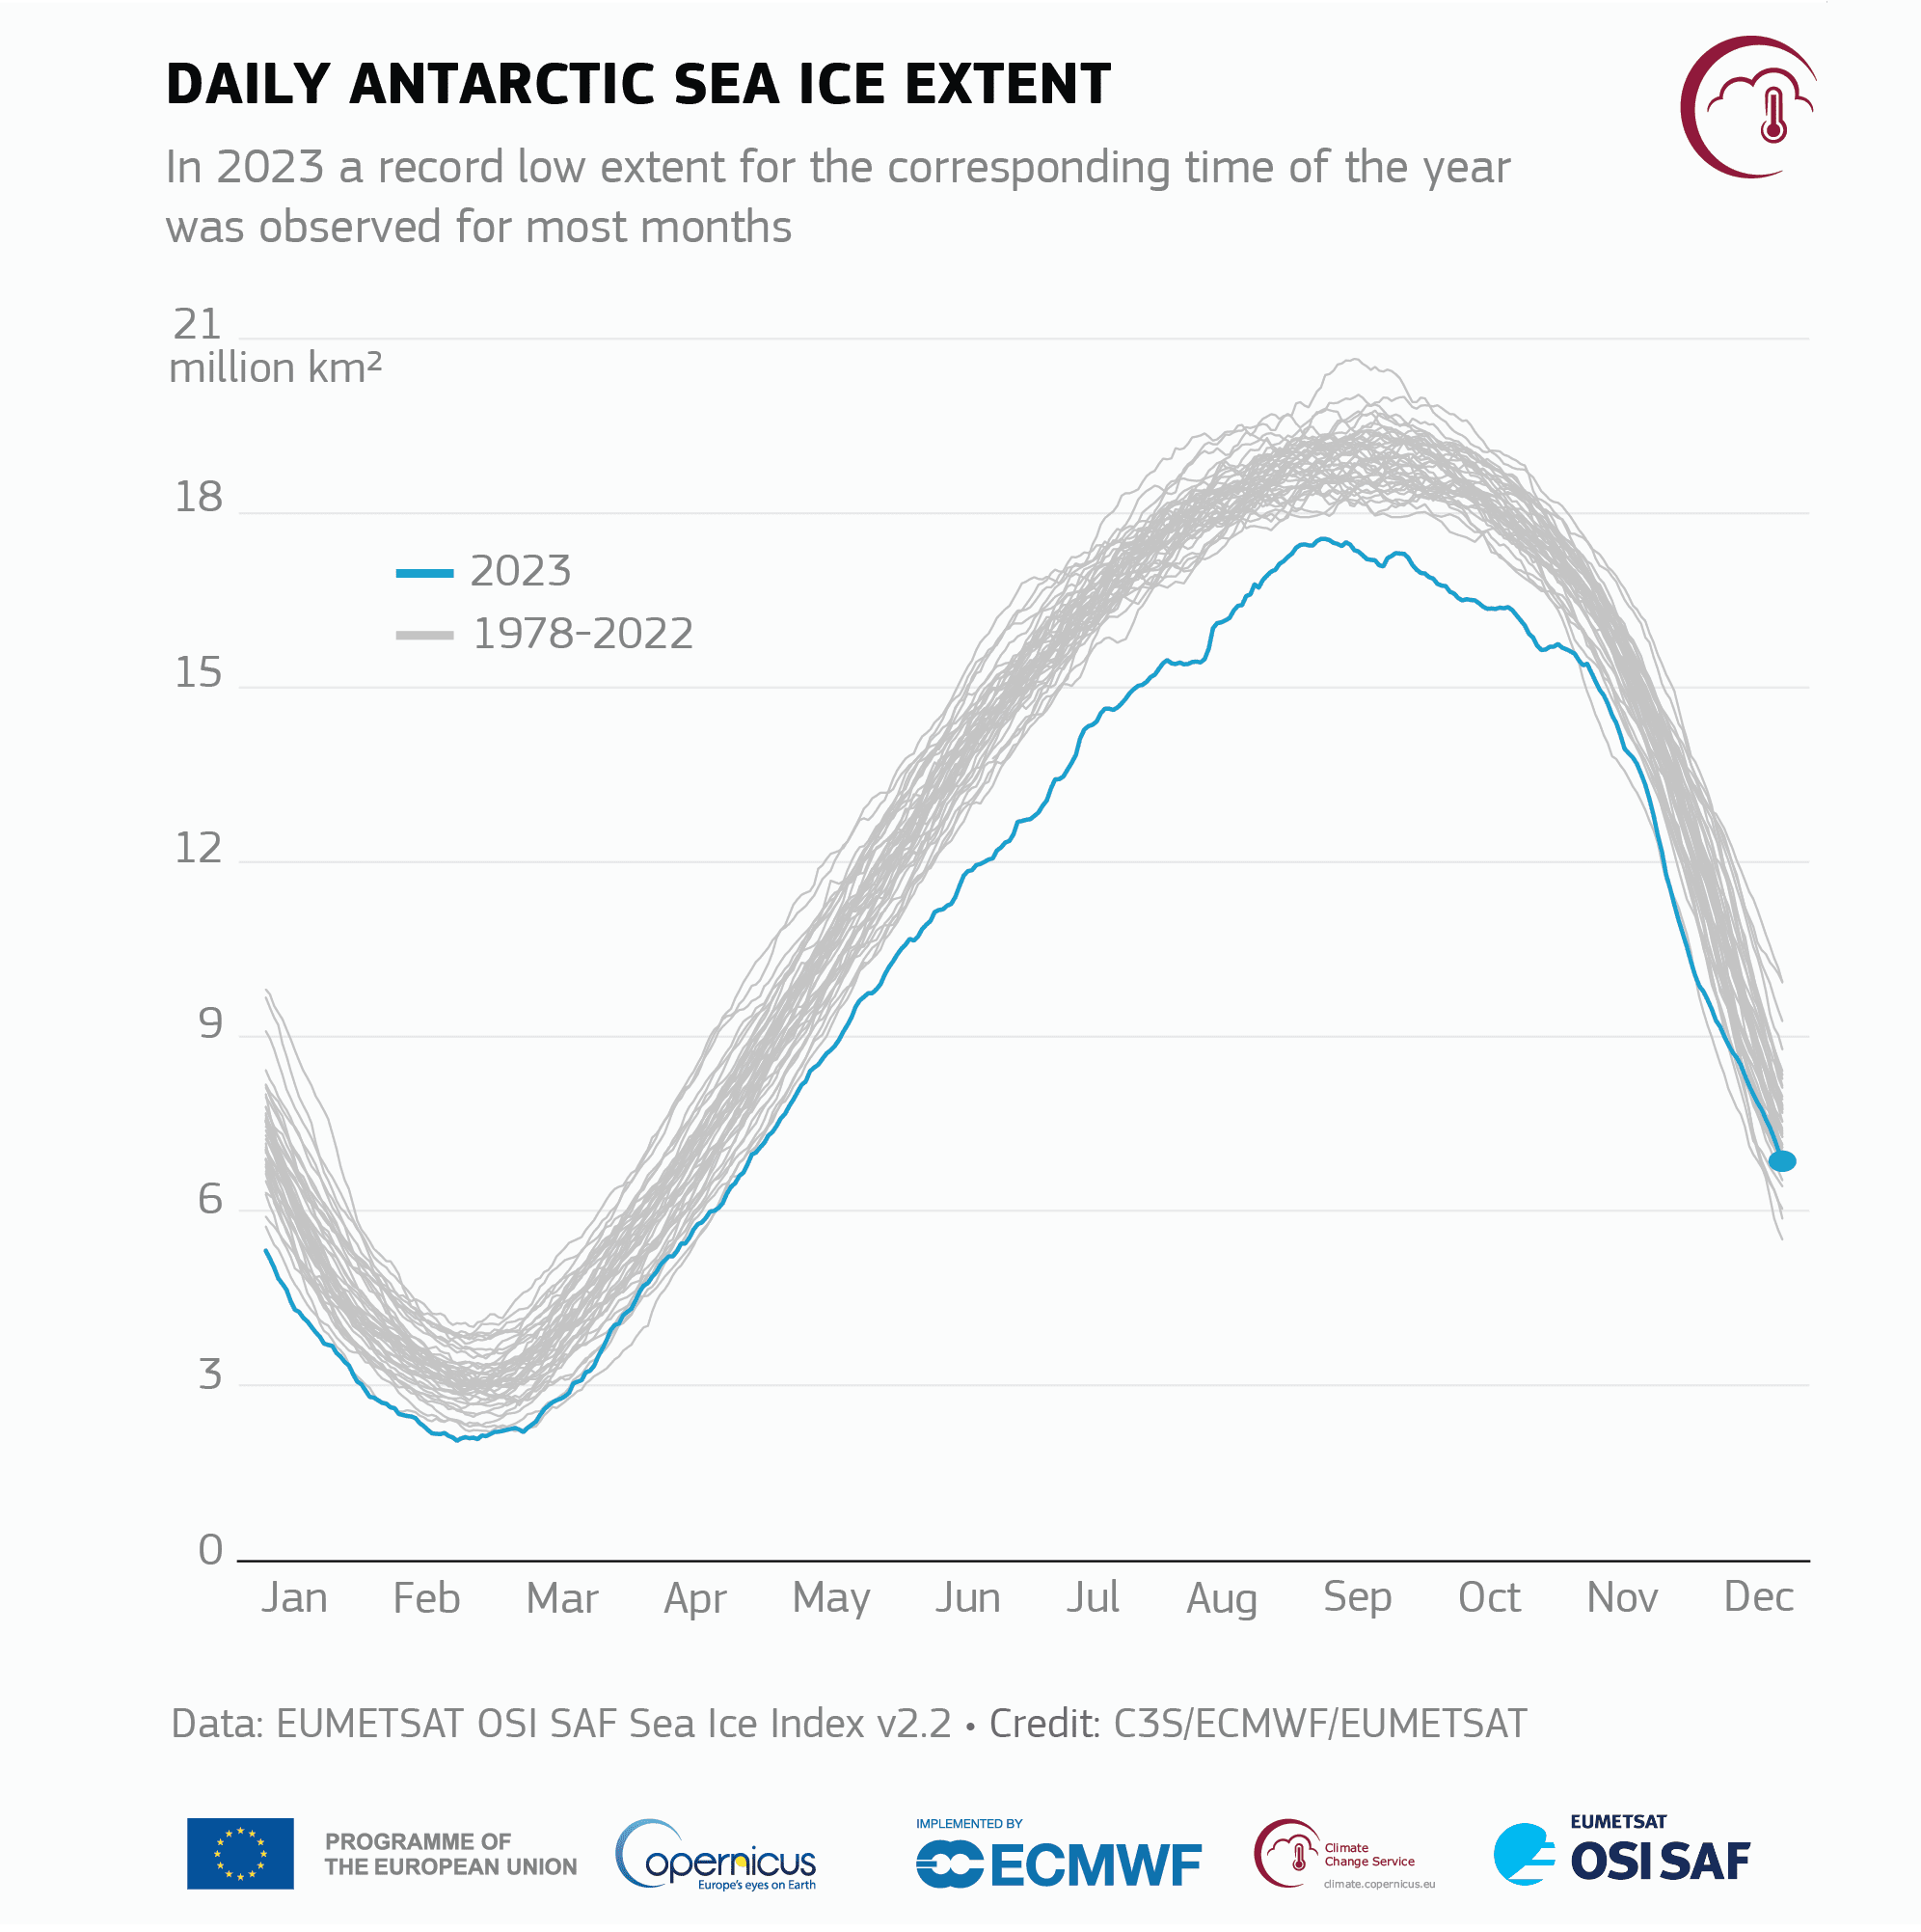 Zmiany zasięgu lodu morskiego na Antarktyce w poszczególnych miesiącach 2023 roku i okresu referencyjnego 1978–2020, fot. C3S / ECMWF / EUMETSAT / https://climate.copernicus.eu/global-climate-highlights-2023# / Modyfikacje: Demagog